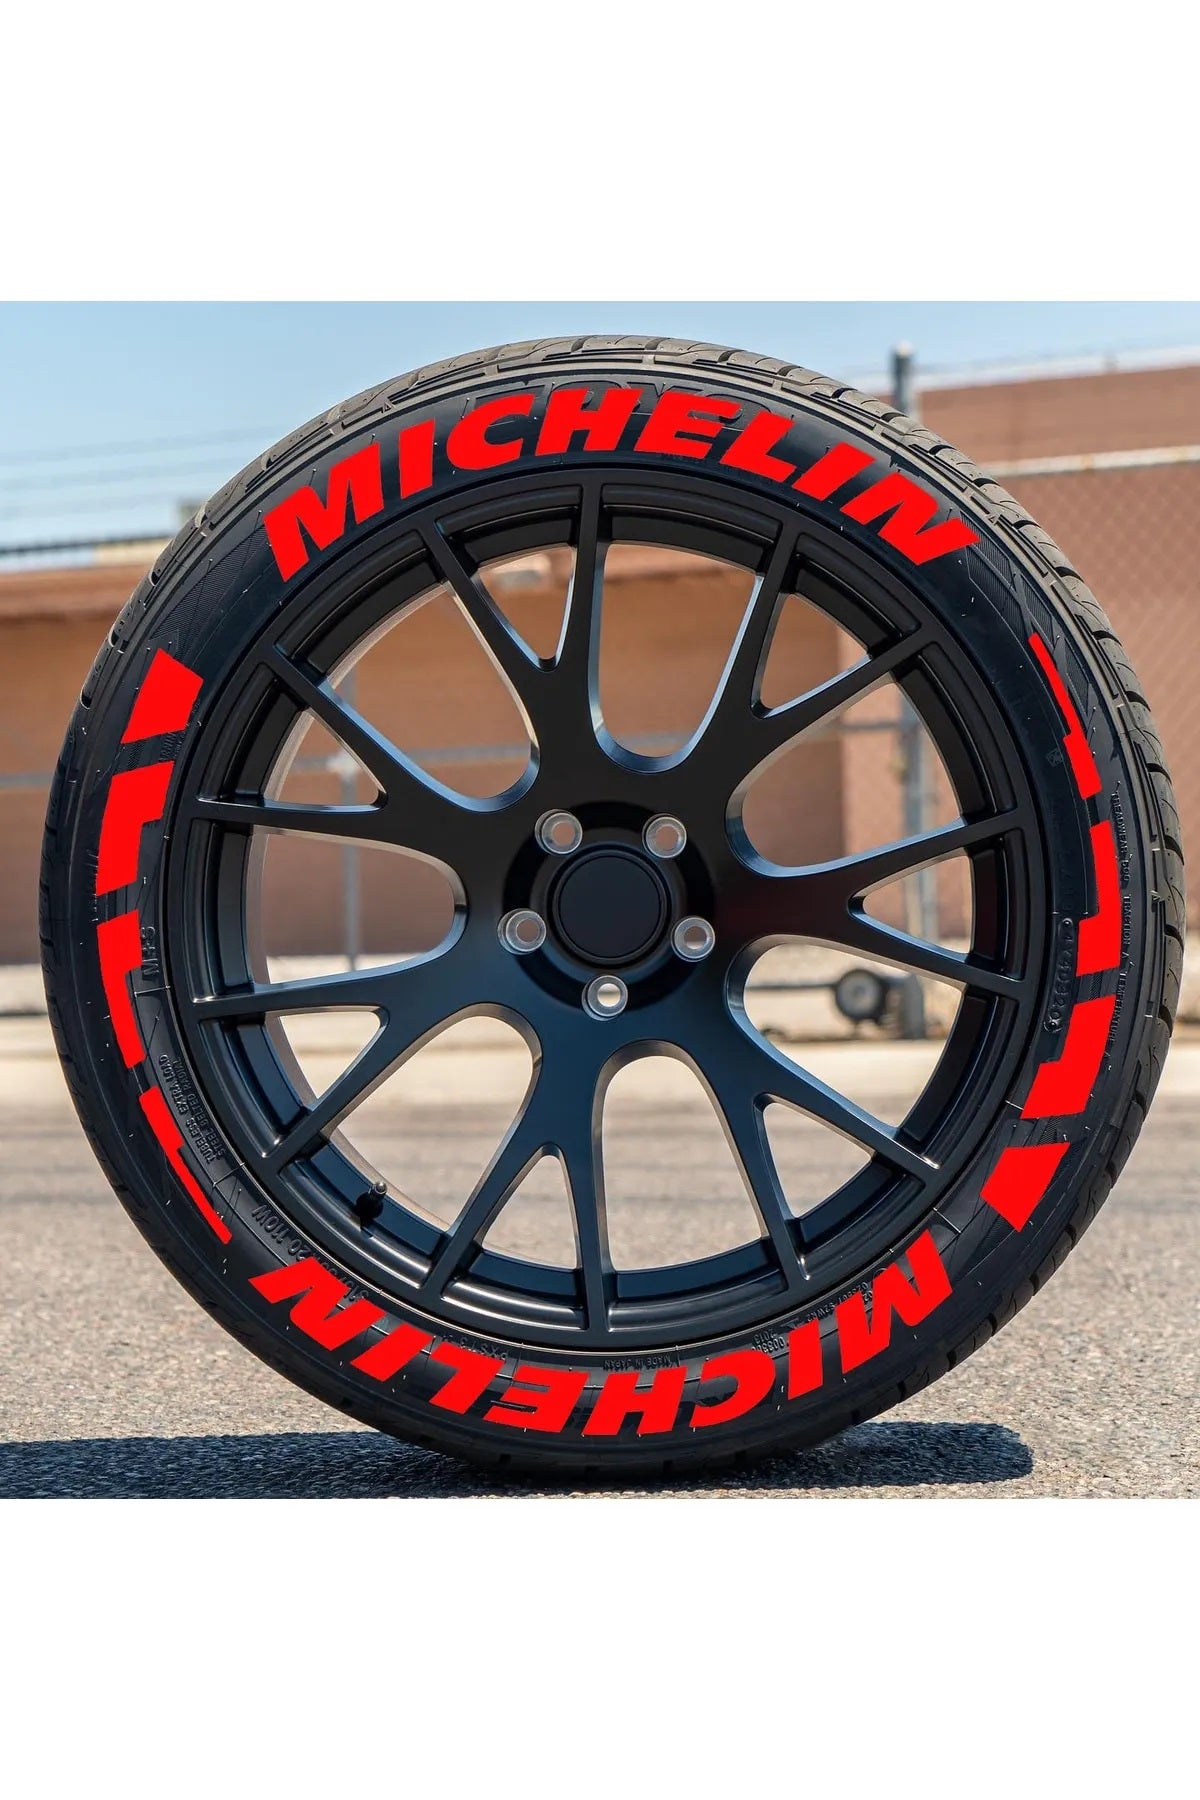 Michelin Tire Letters,Michelin TIRE STICKERS | Tire lettering Michelin Car Tire Sticker